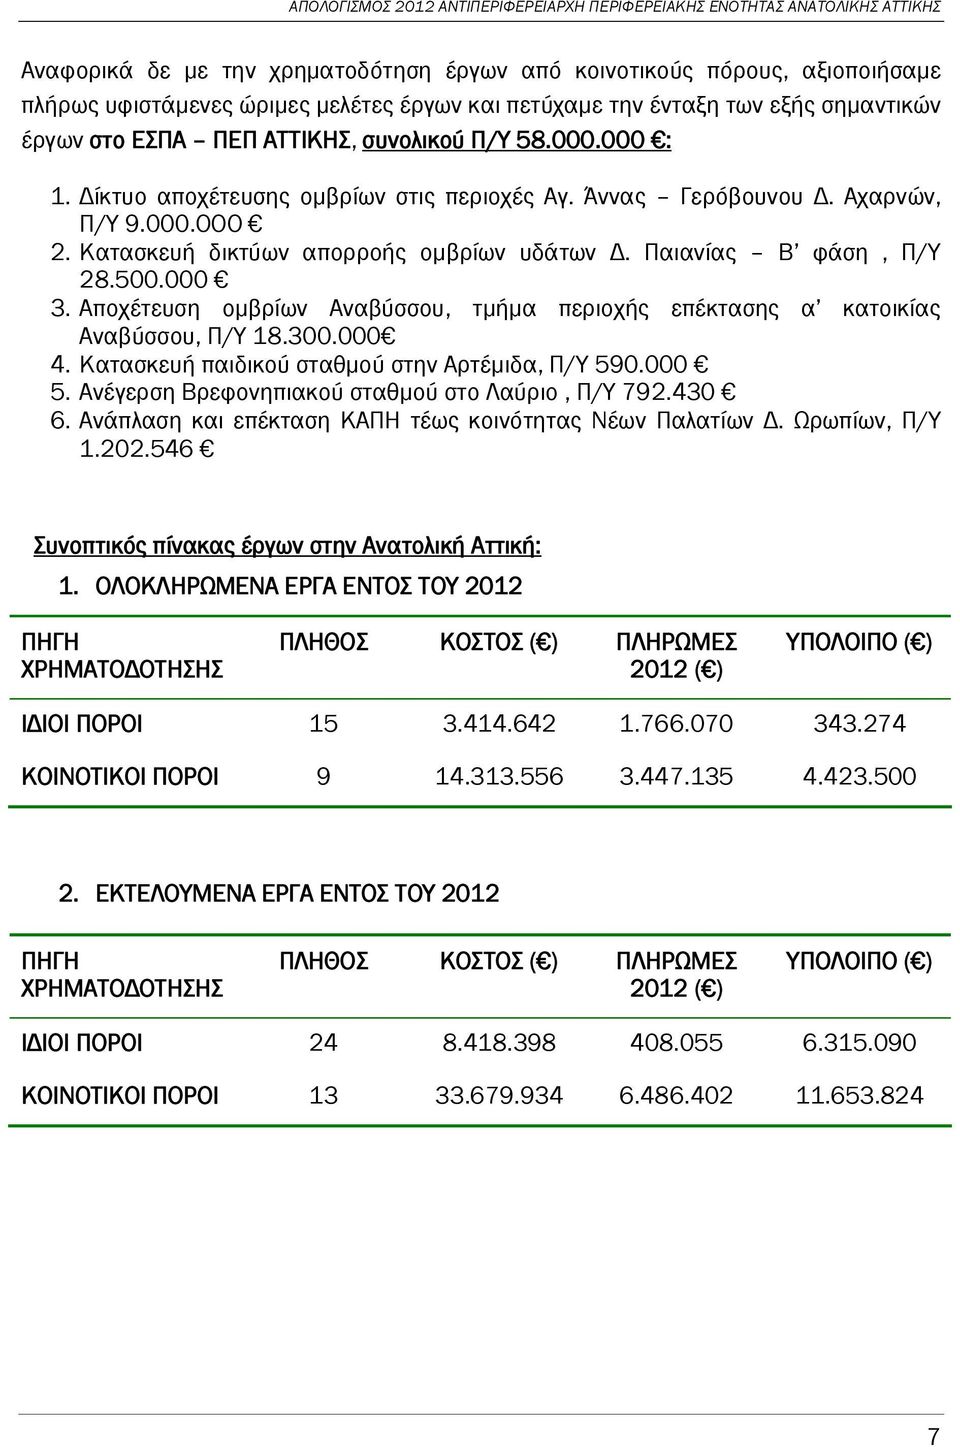 Αποχέτευση ομβρίων Αναβύσσου, τμήμα περιοχής επέκτασης α κατοικίας Αναβύσσου, Π/Υ 18.300.000 4. Κατασκευή παιδικού σταθμού στην Αρτέμιδα, Π/Υ 590.000 5.